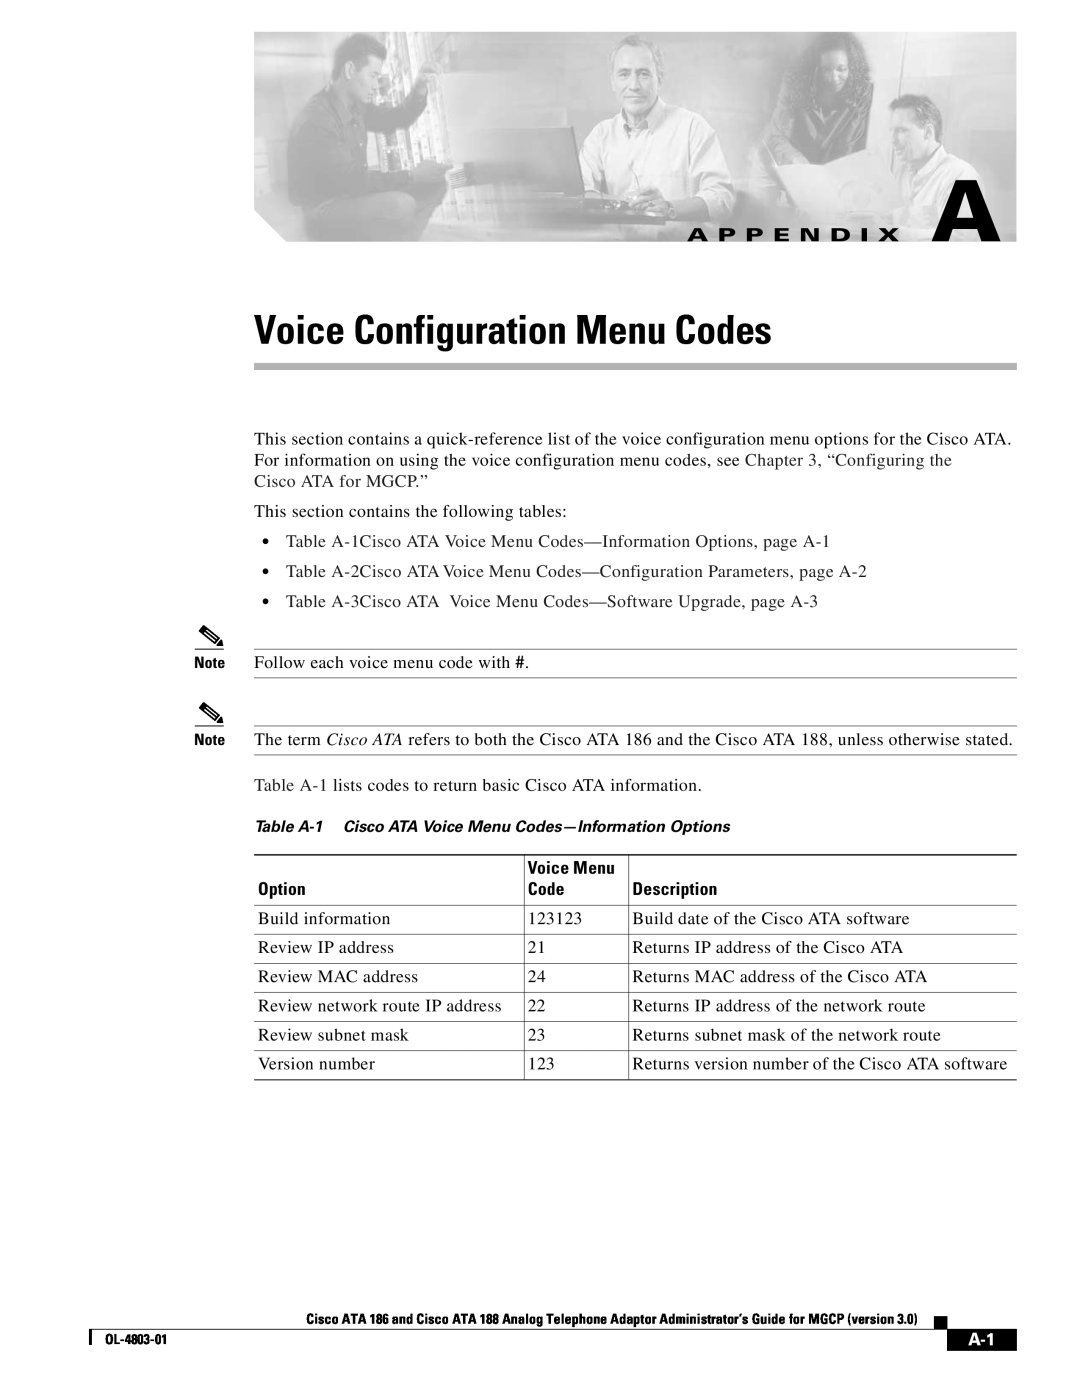 Cisco Systems ATA 186 manual Voice Configuration Menu Codes, A P P E N D I X A, Option, Voice Menu, Description 